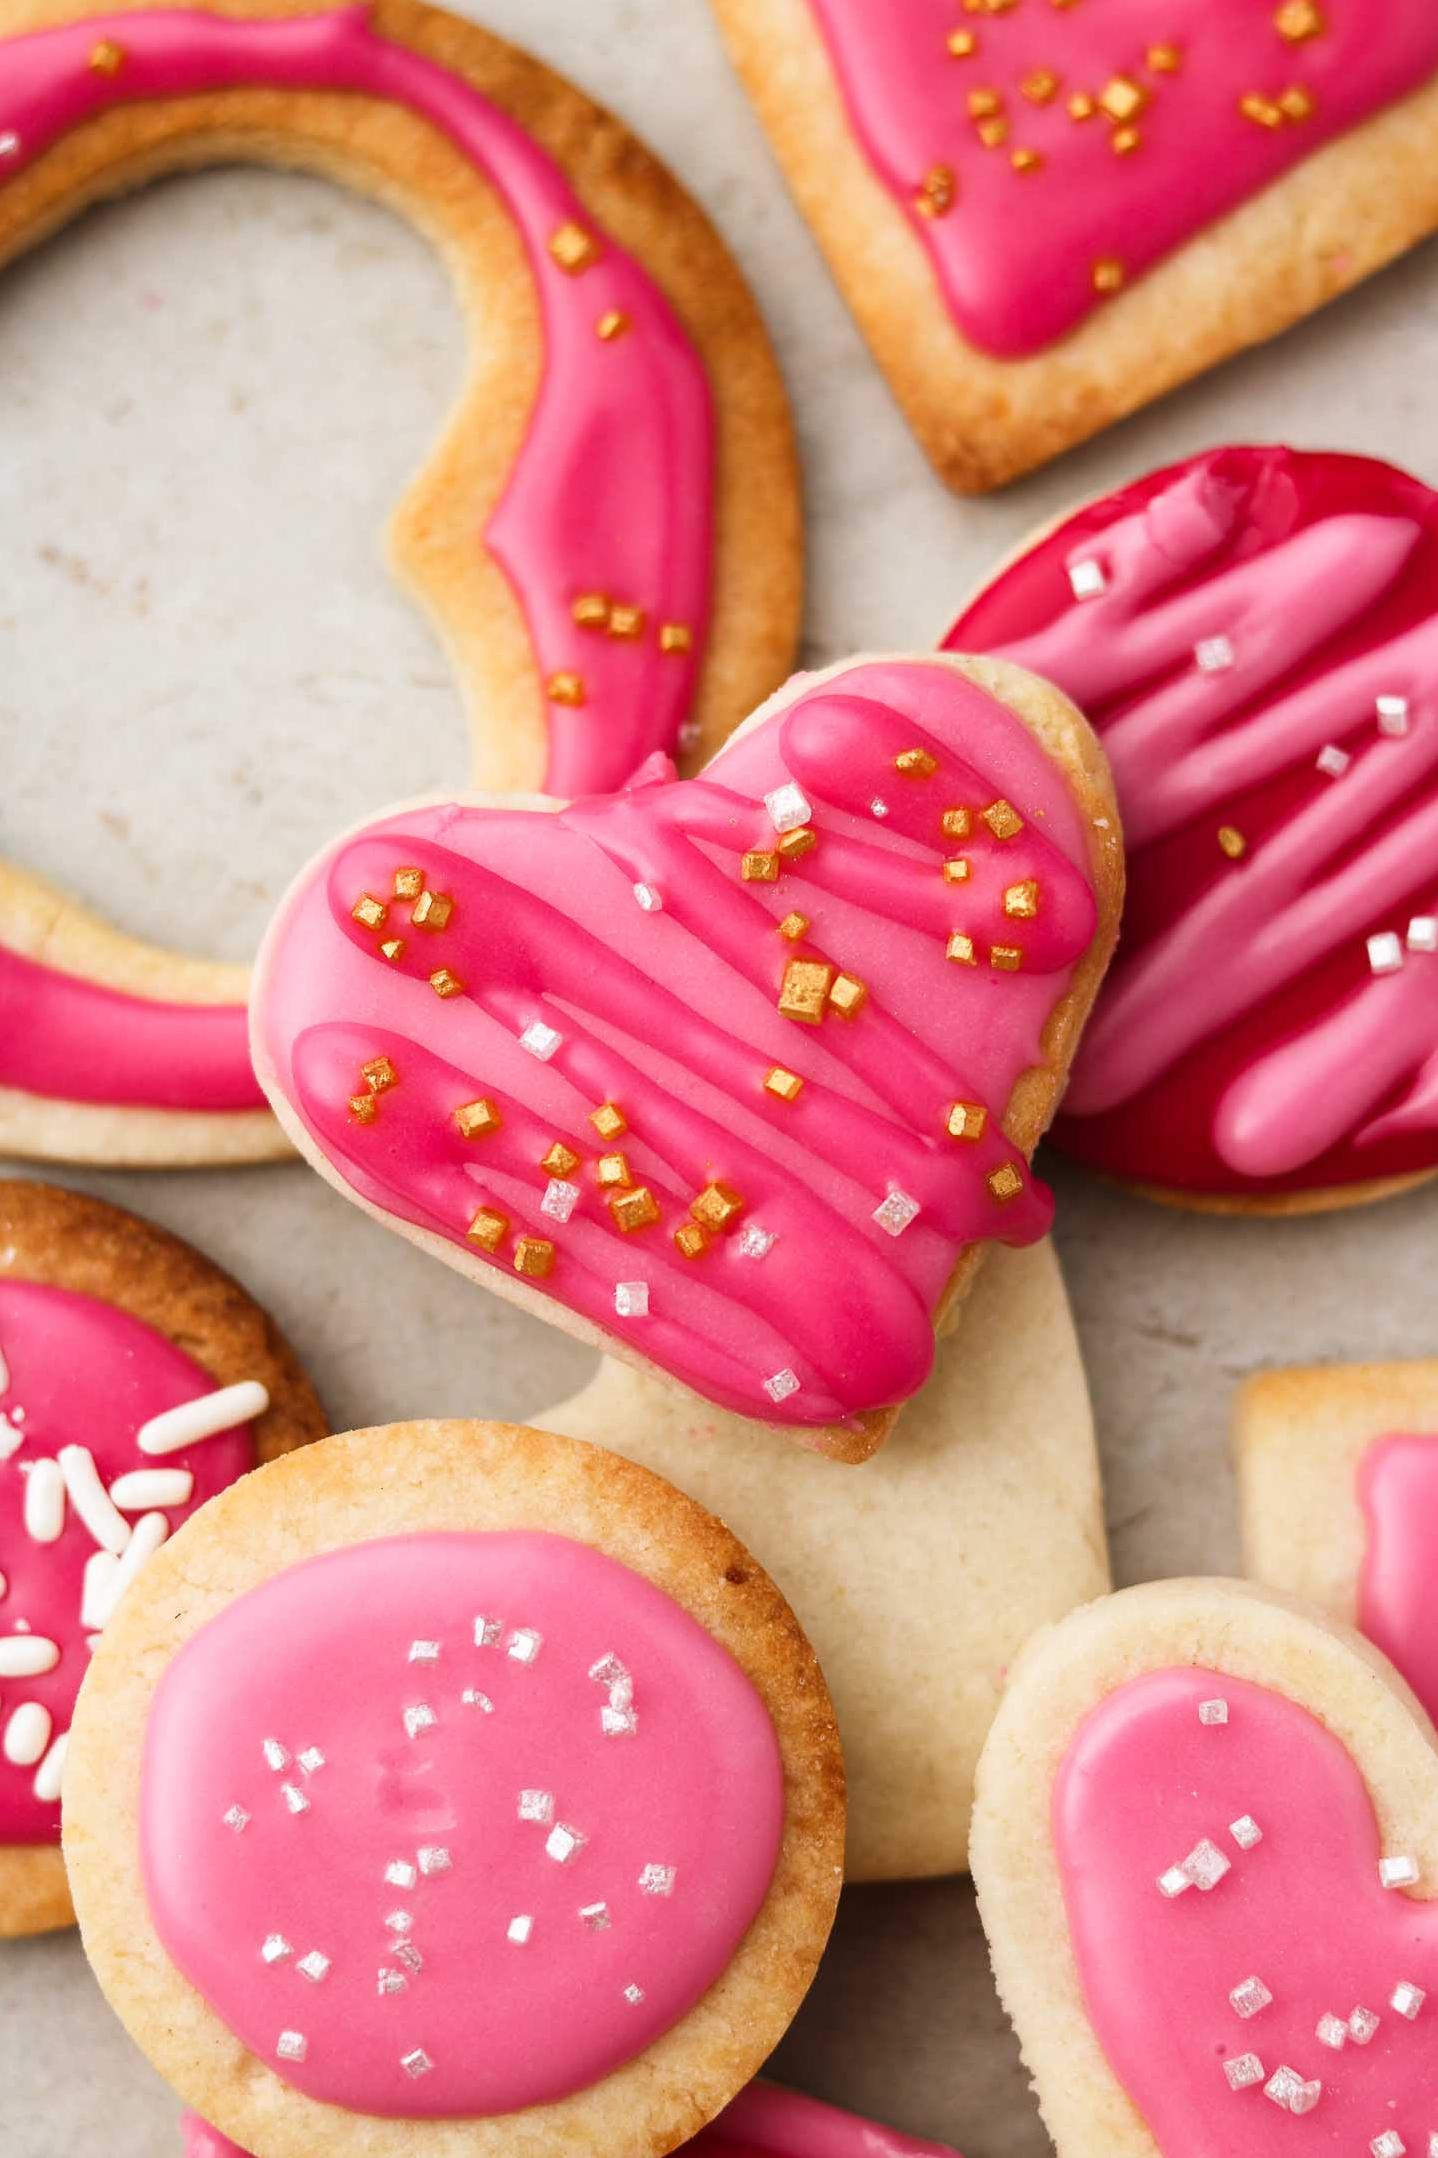  Vegan sugar cookies: no animals harmed, just tastebuds satisfied.